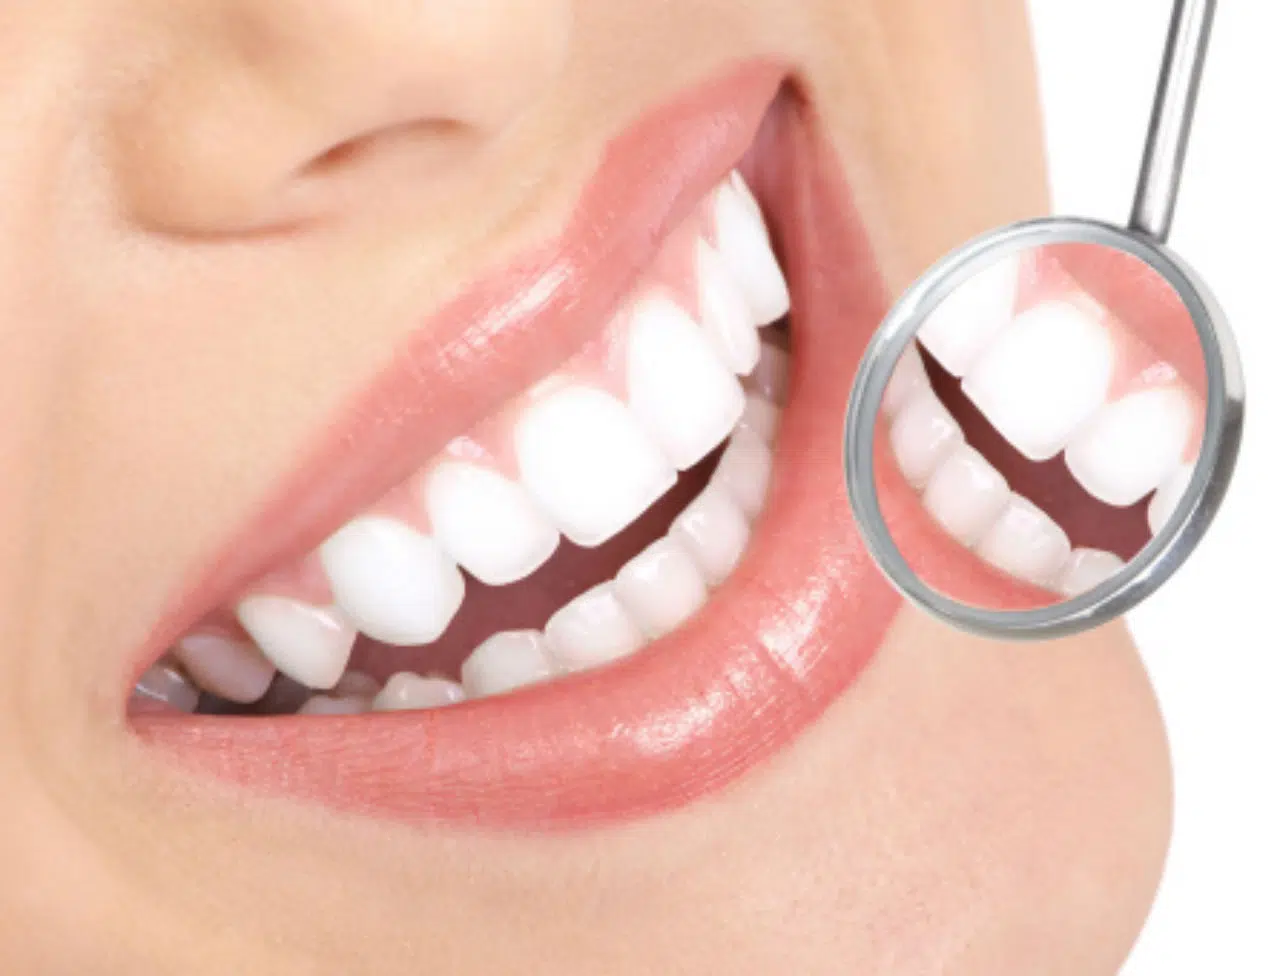 Comment se présente un implant dentaire ?